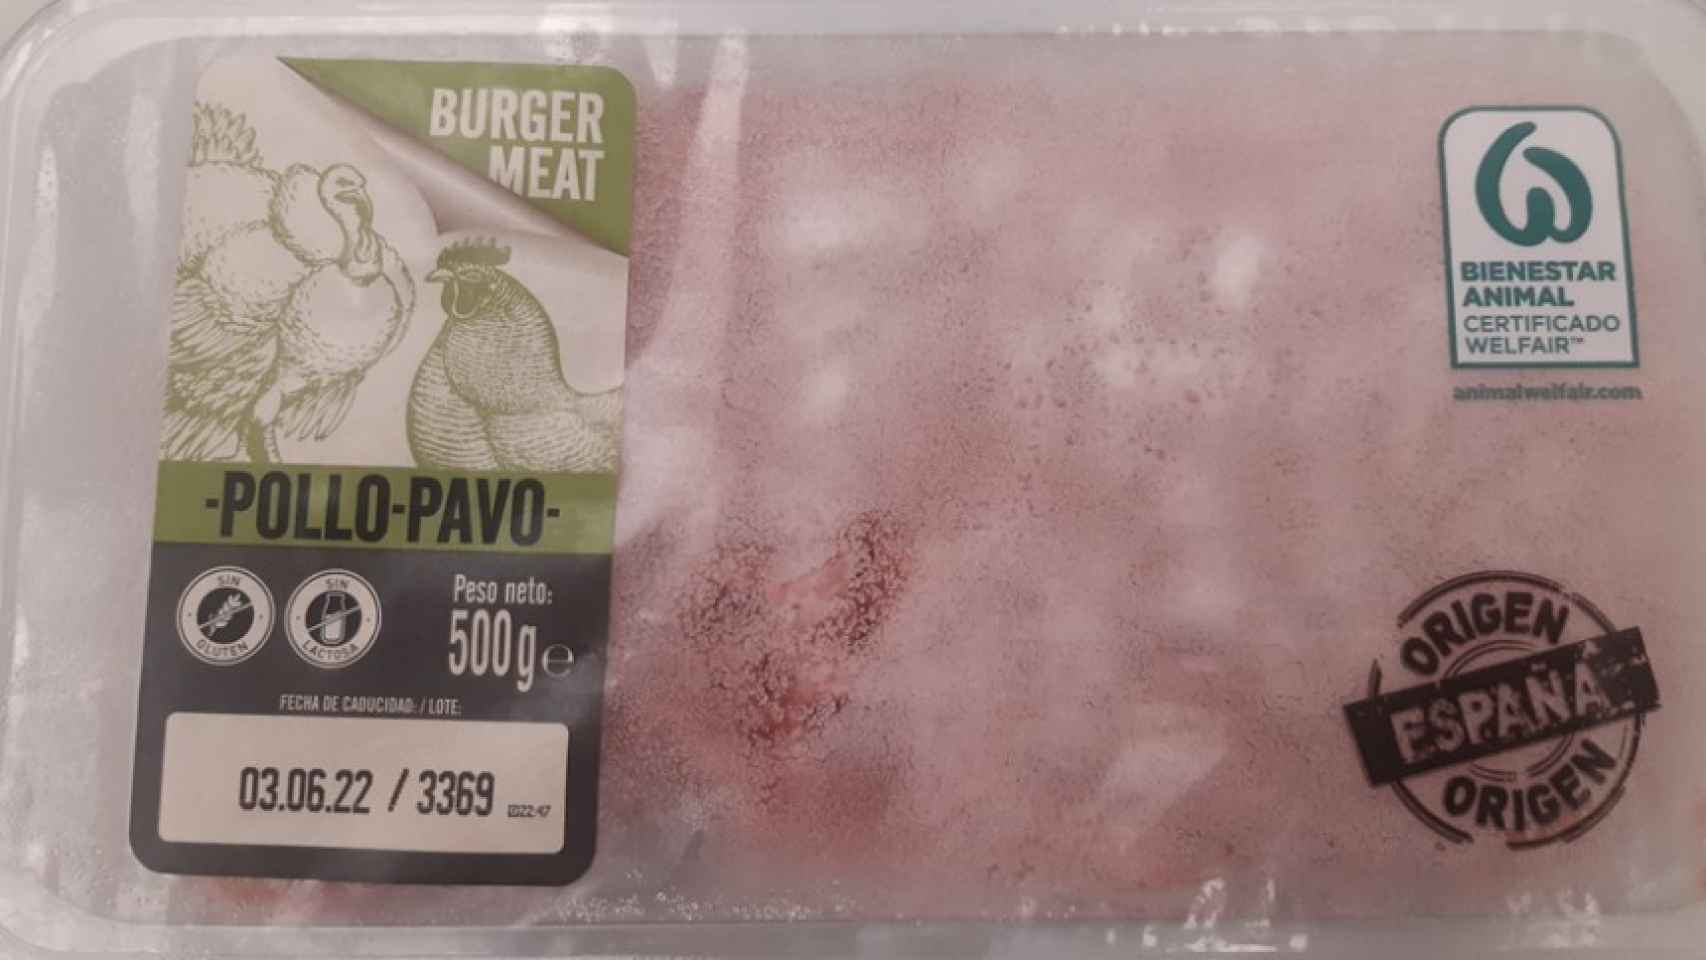 La carne contaminada con 'salmonella'.